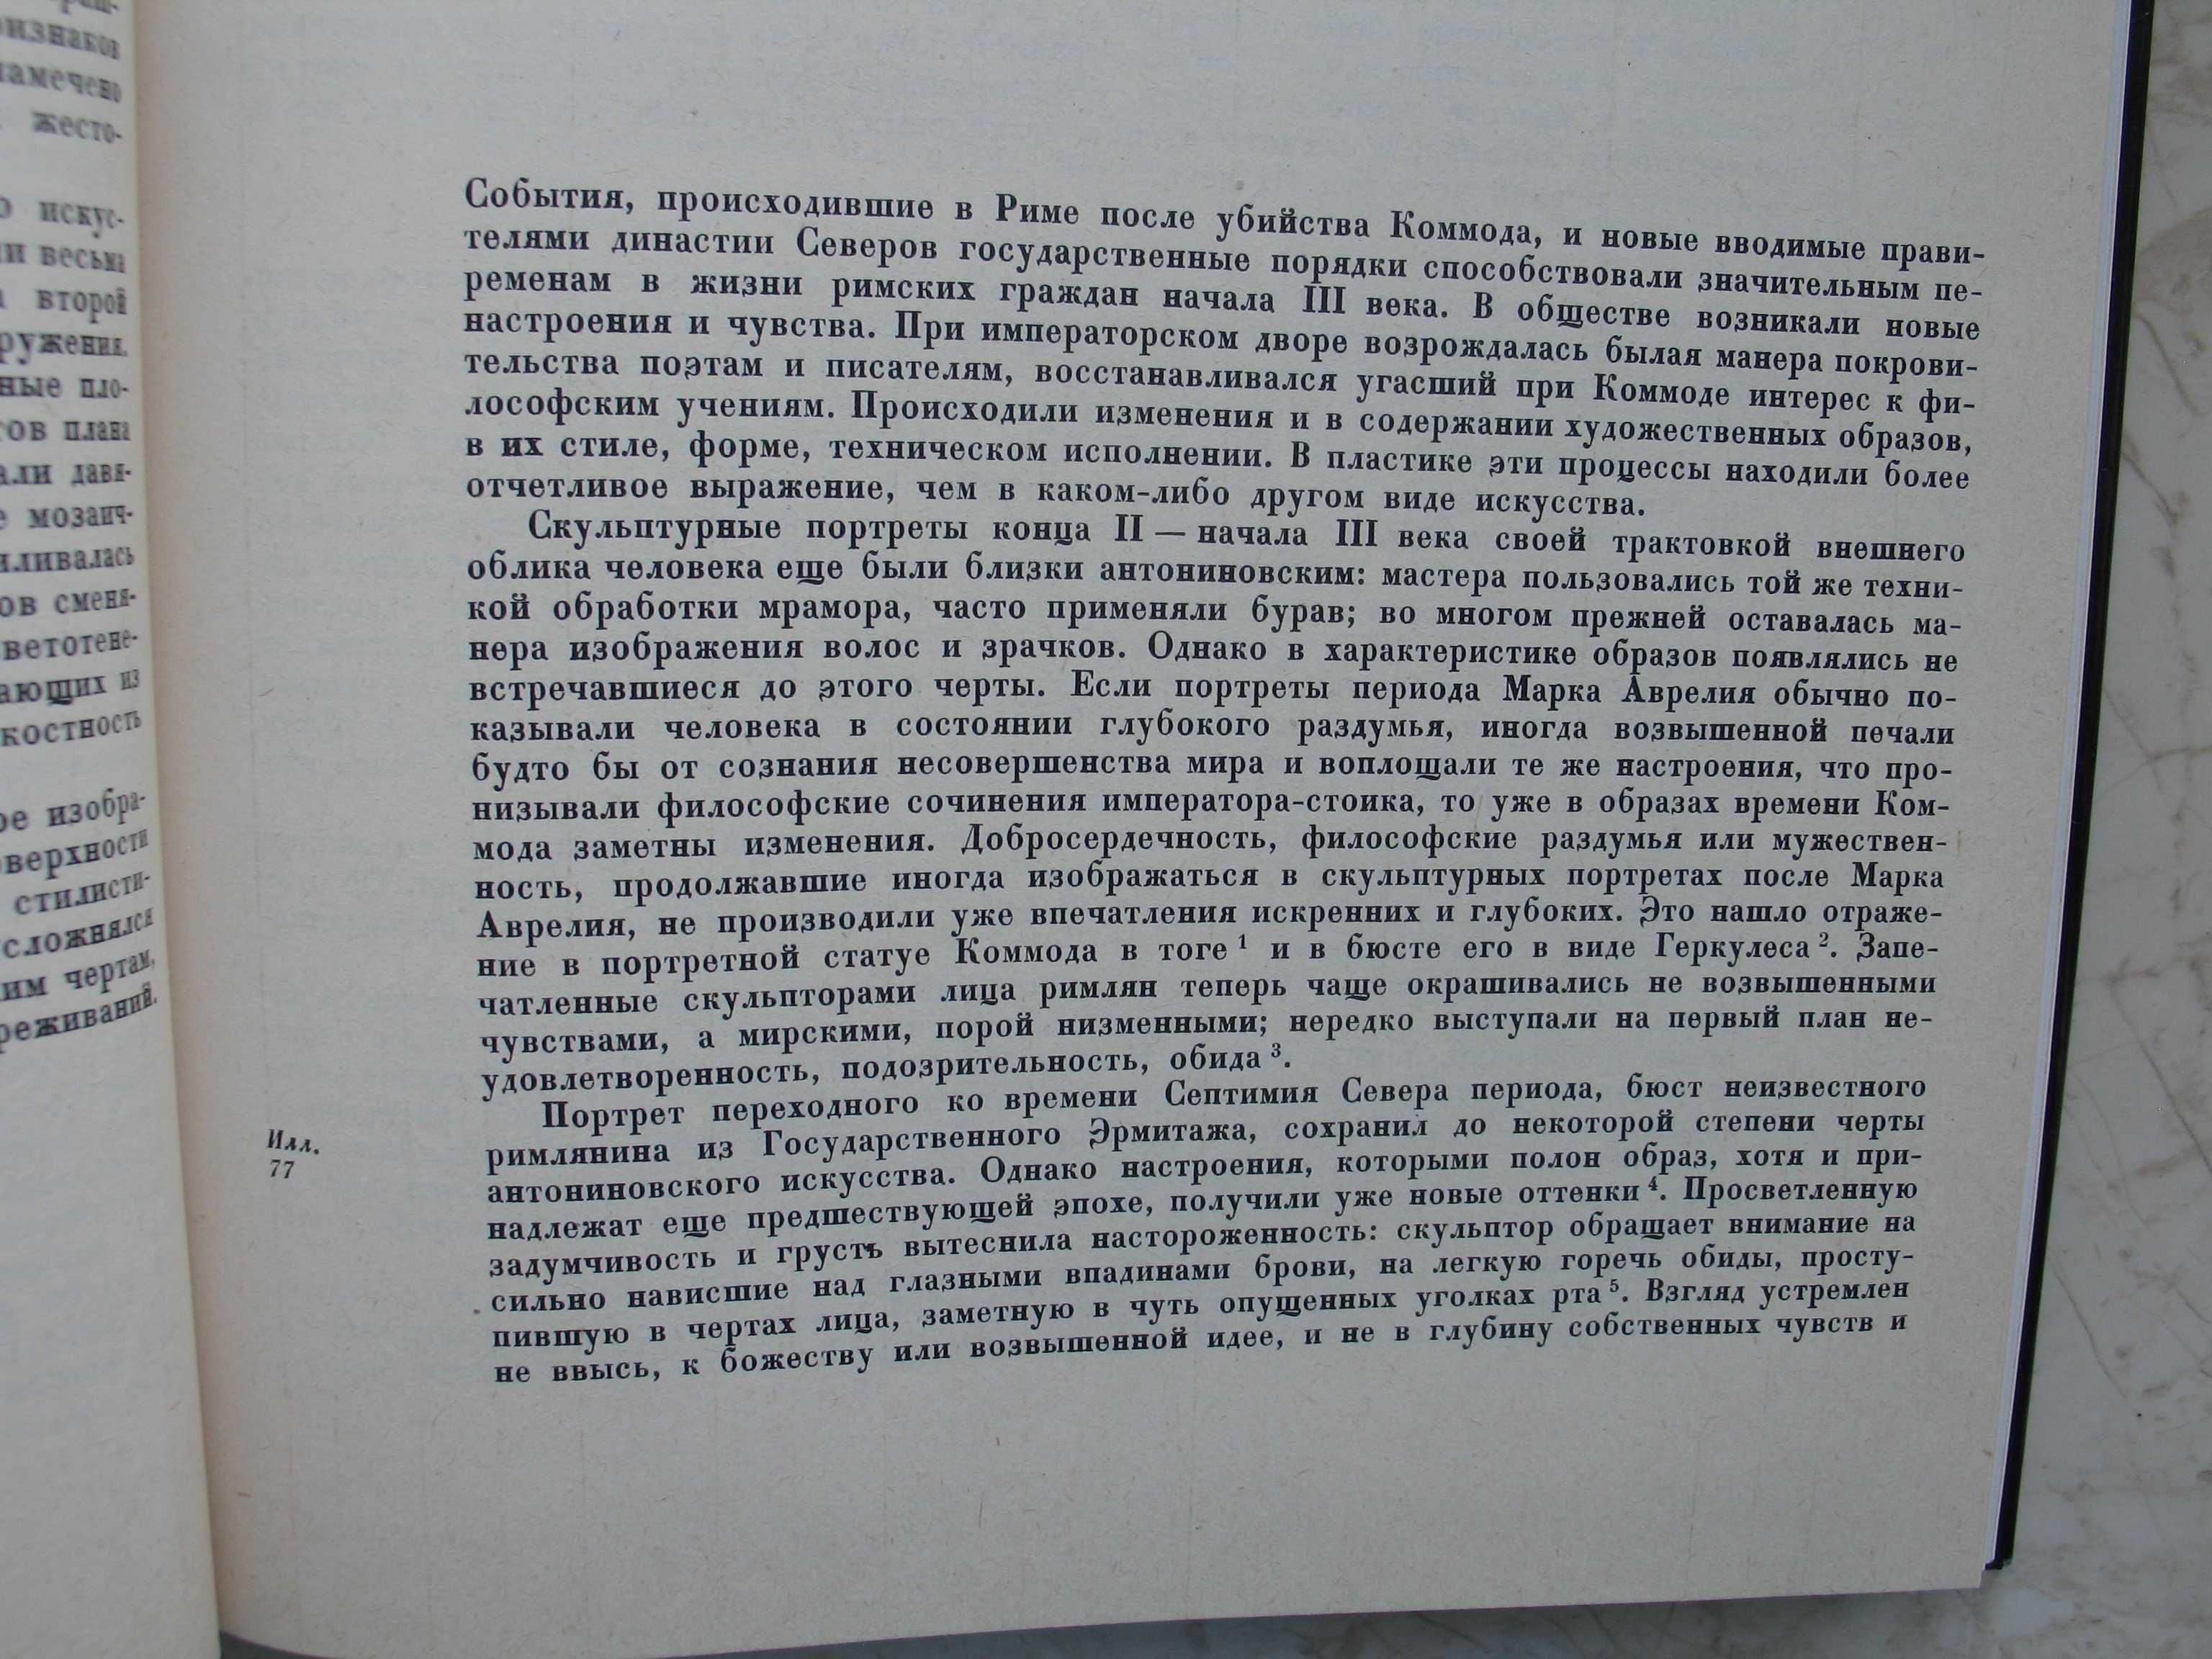 "Римский скульптурный портрет III века" Г.И. Соколов, 1983 год